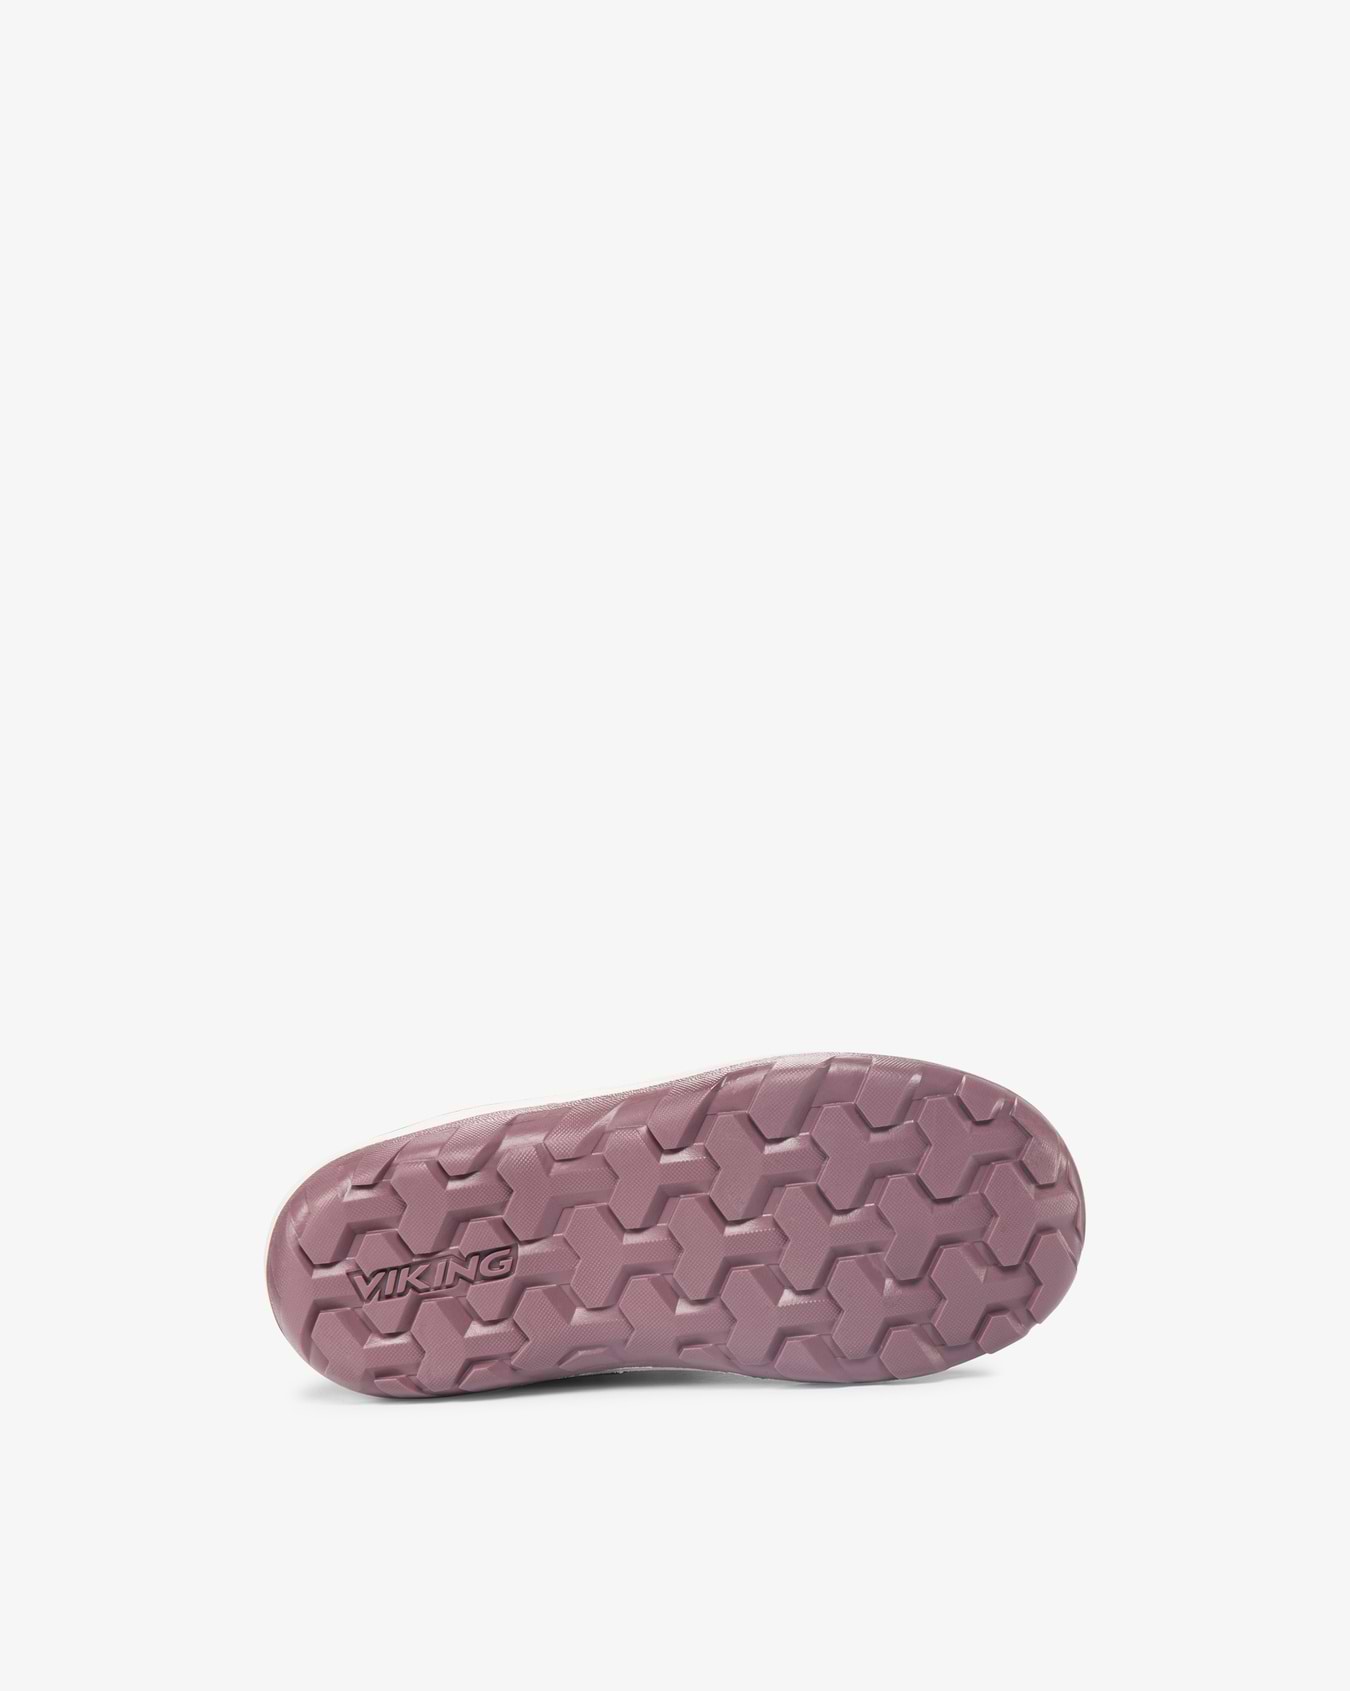 Viking Tretten Kids Sneaker Pink Waterproof Insulated Velcro